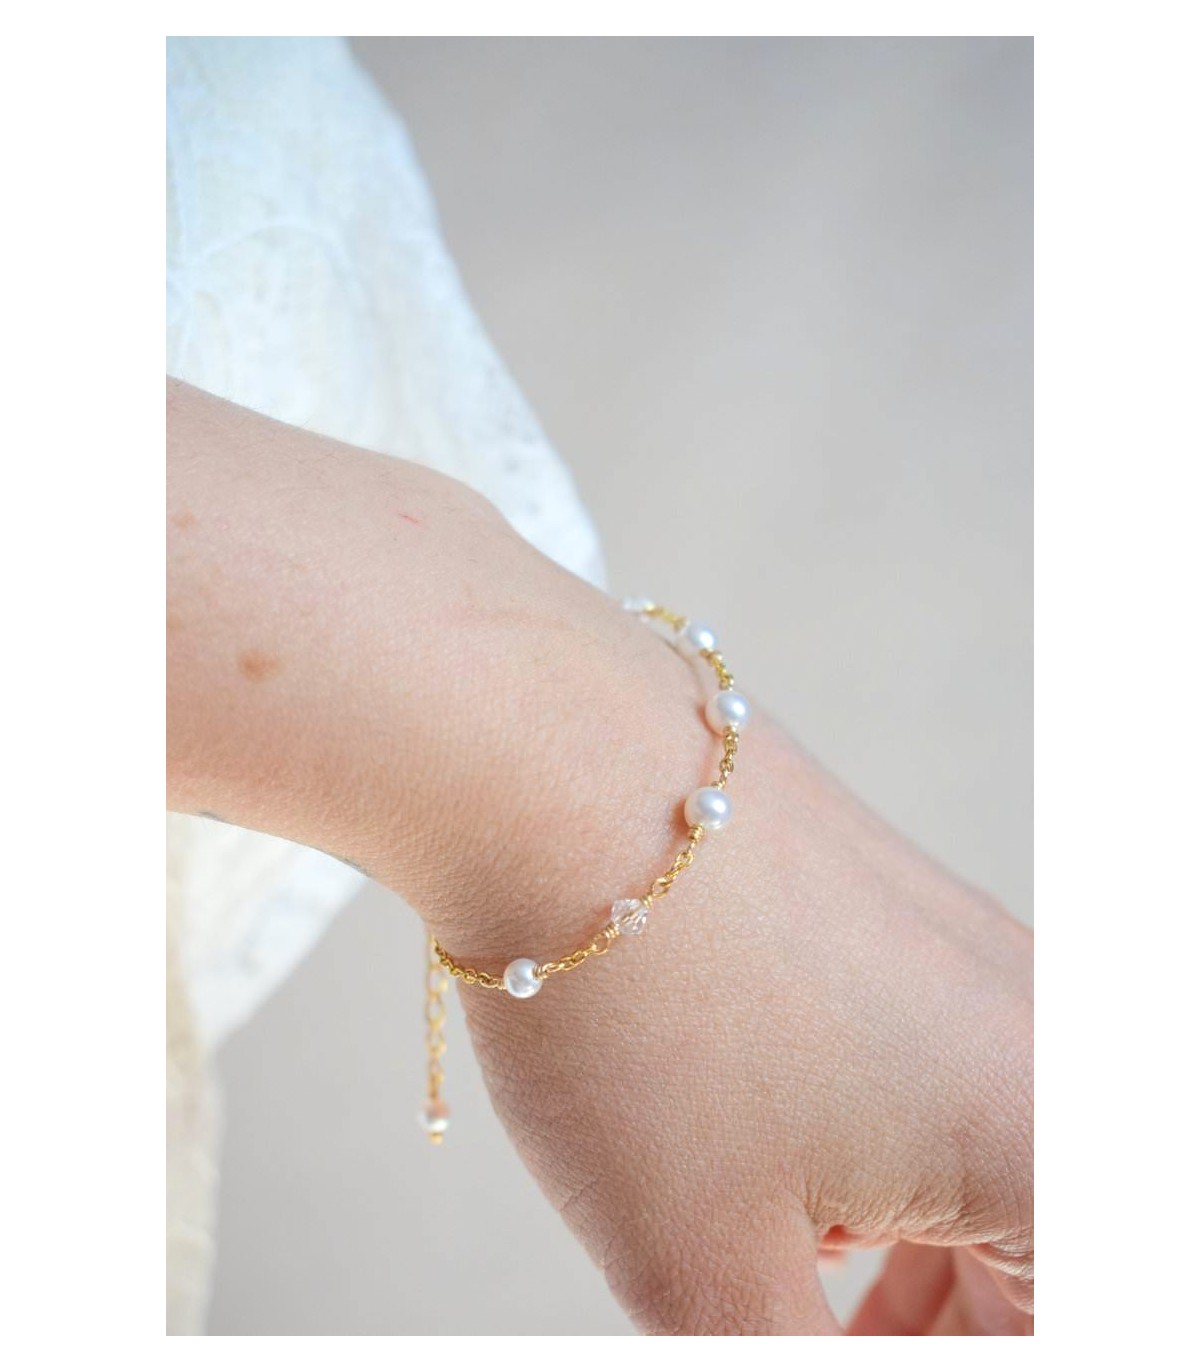 Bijoux mariage - Bracelet de mariée Clélie avec des perles et des cristaux en alternance sur une fine chaîne.